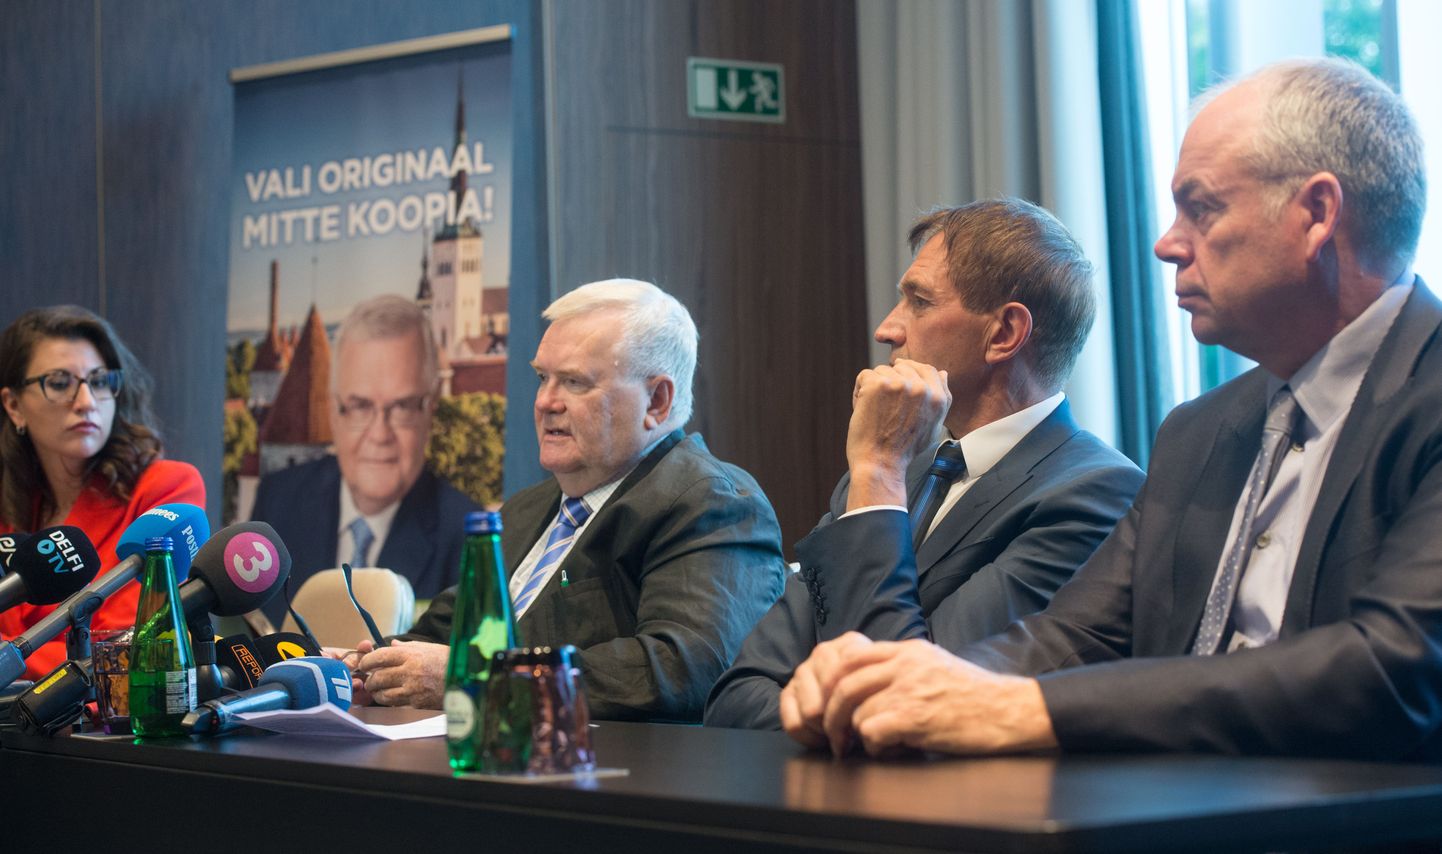 Ühisnimekirja loomine tehti teatavaks Tallinnas Hiltoni hotellis antud pressikonverentsil, millel osalesid Olga Ivanova (vasakult), Edgar Savisaar, Urmas Sõõrumaa ja Jüri Mõis.